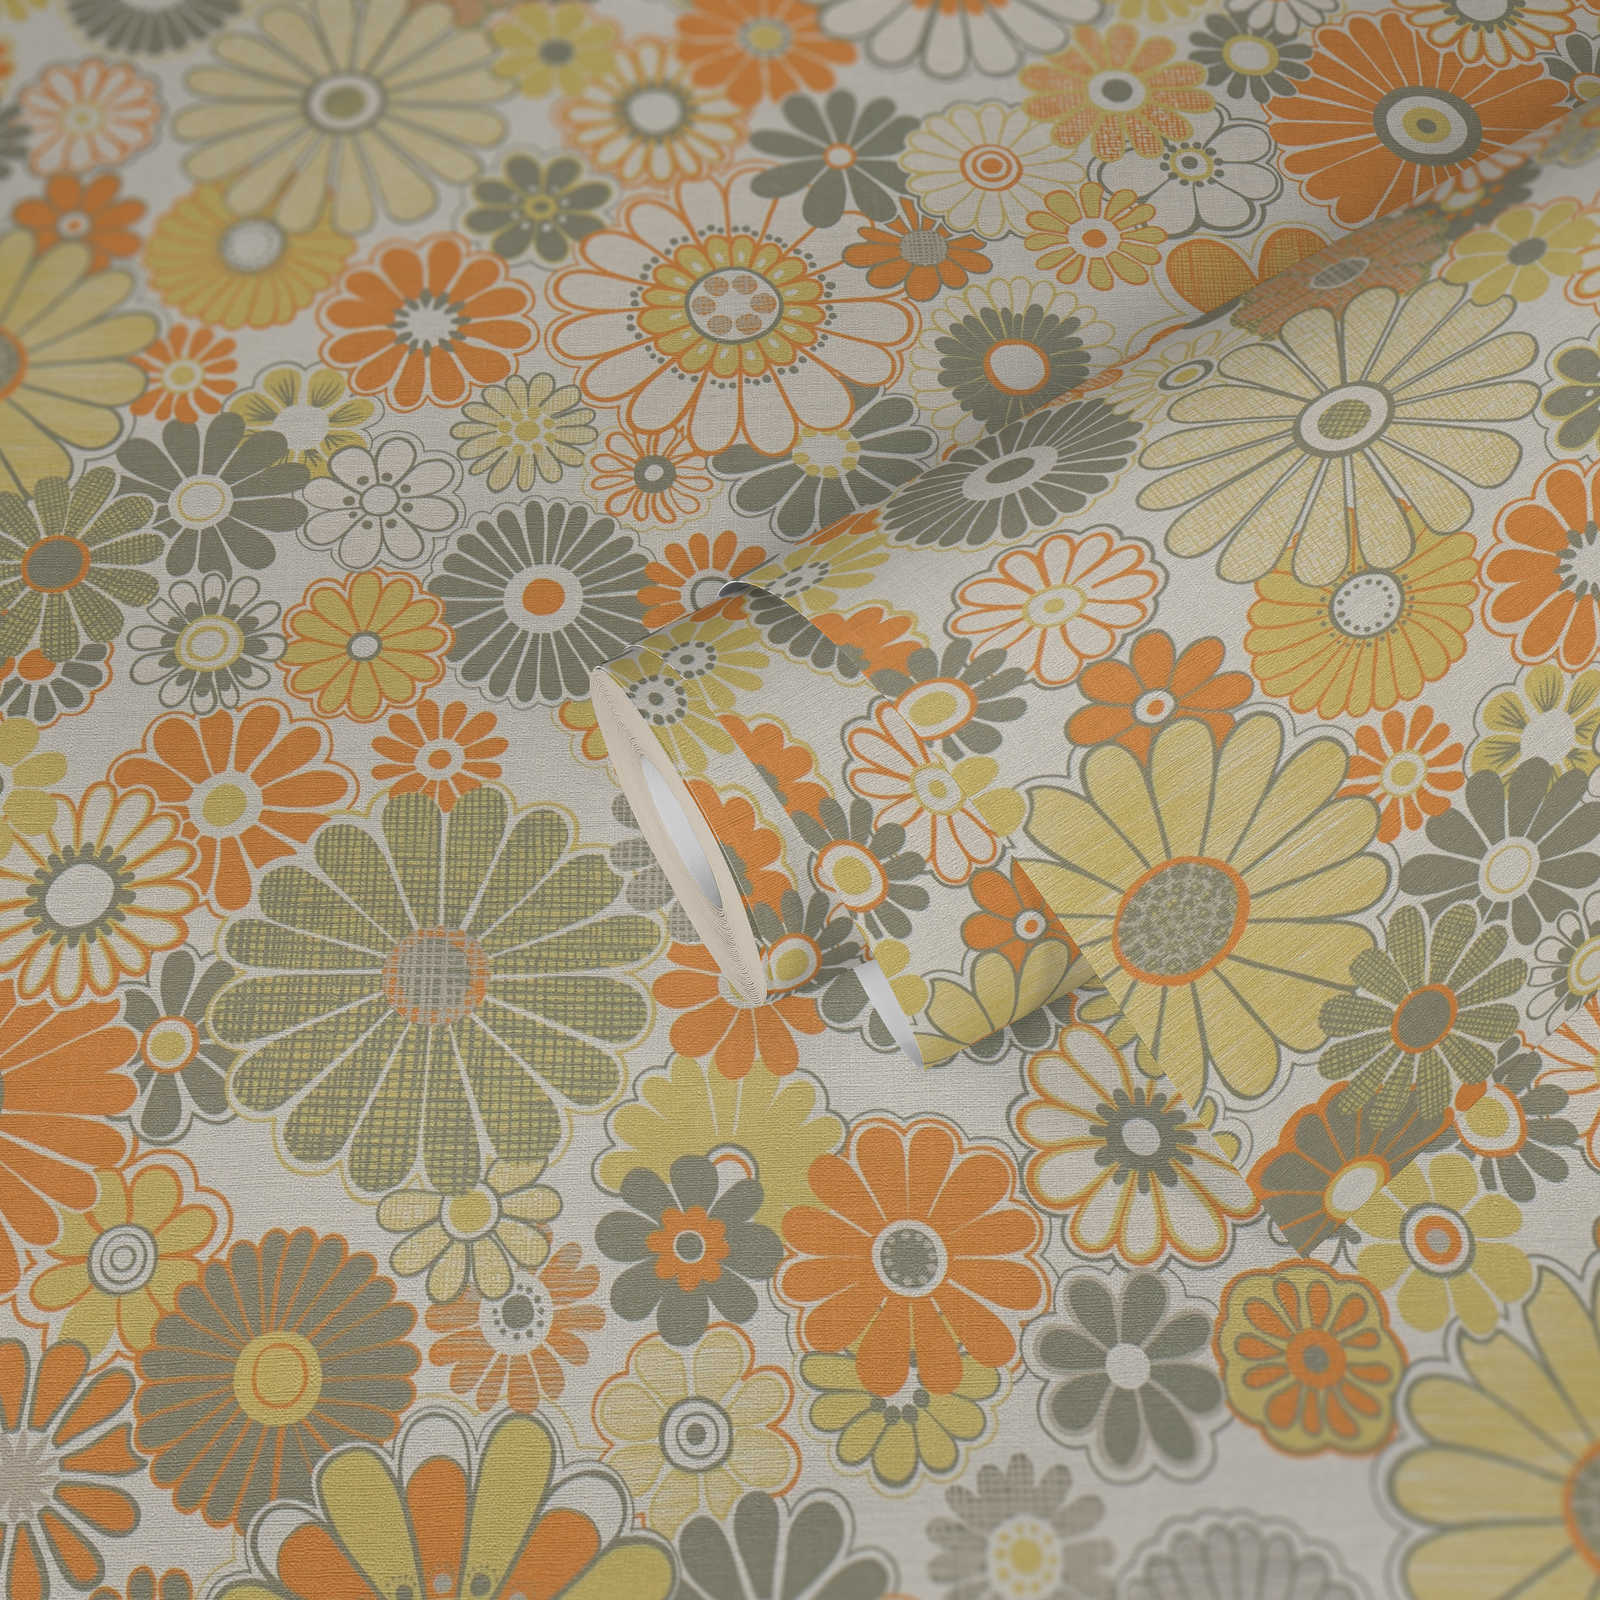             Leicht strukturierte Blumen Tapete im Retro Stil – Orange, Grün, Weiß
        